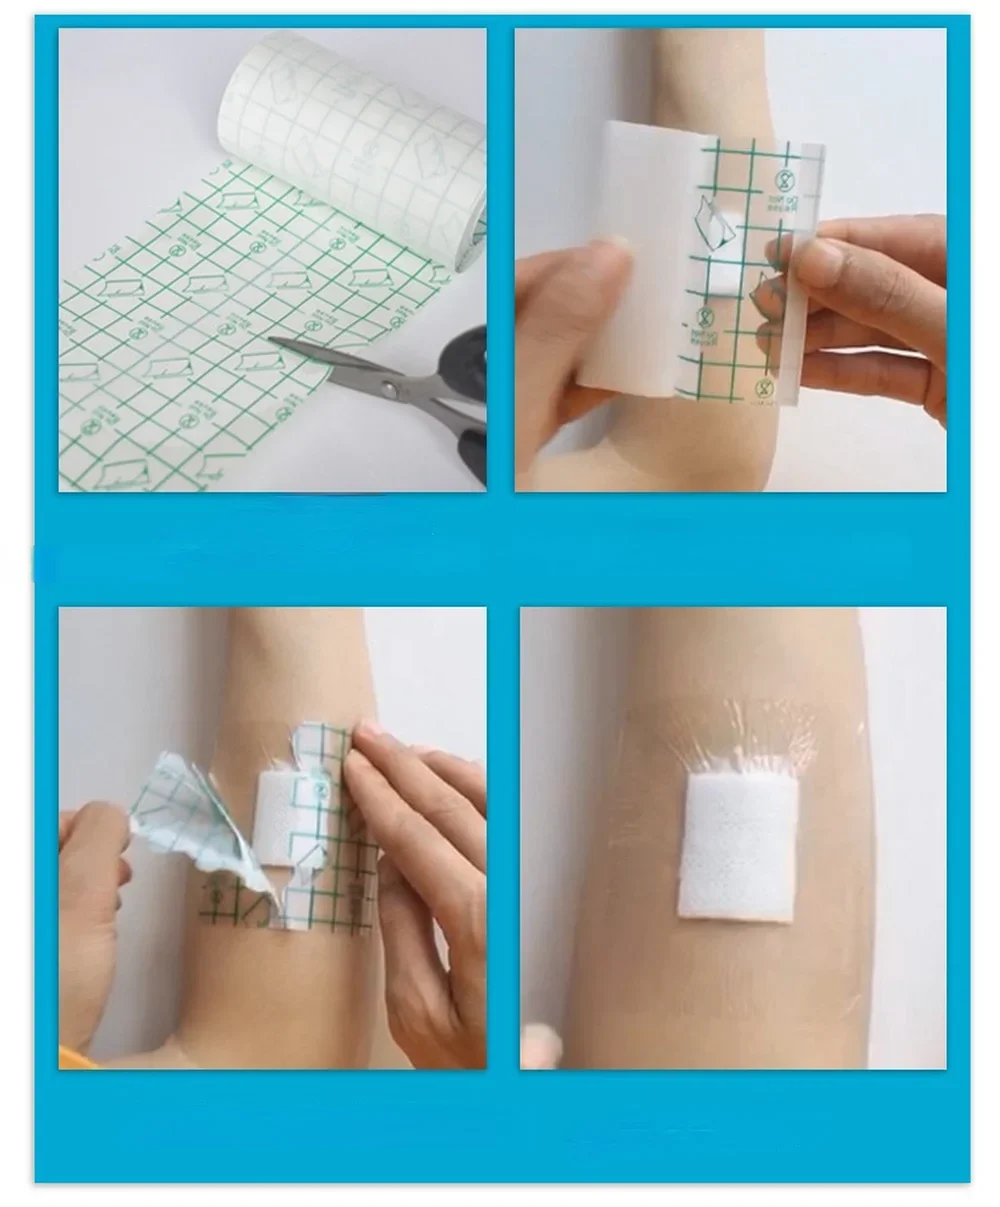 100 pces à prova dwaterproof água transparente fita do plutônio filme adesivo médico emplastro anti-alérgico ferida fita de vestir kit de primeiros socorros band aids